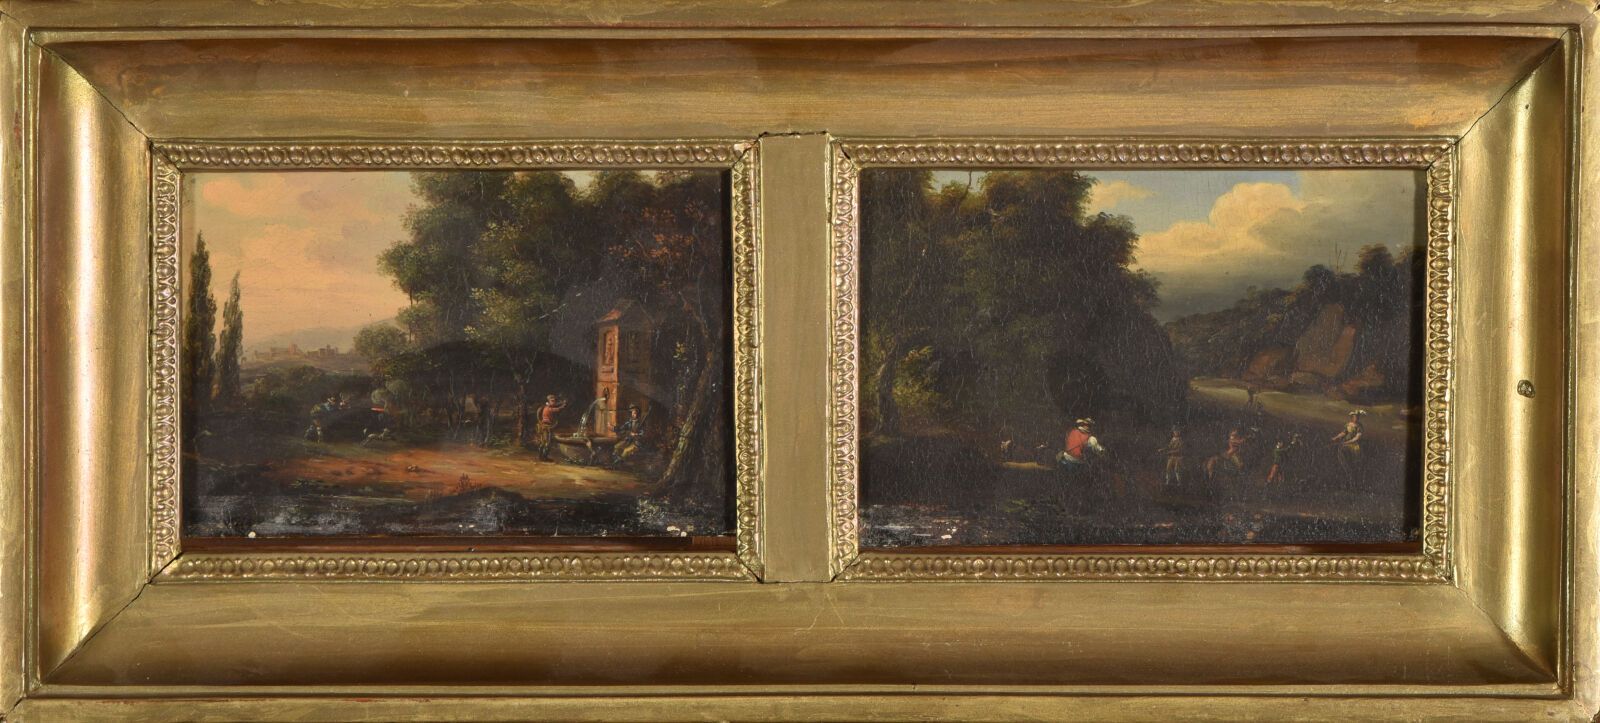 Null 1800年左右的法国学校

两幅锌制小型油画作品（旧清漆被弄脏）。

1 - 猎人在喷泉前的停顿和向灌木丛中的射击。

2 - 启程前往河边猎鹰。

&hellip;